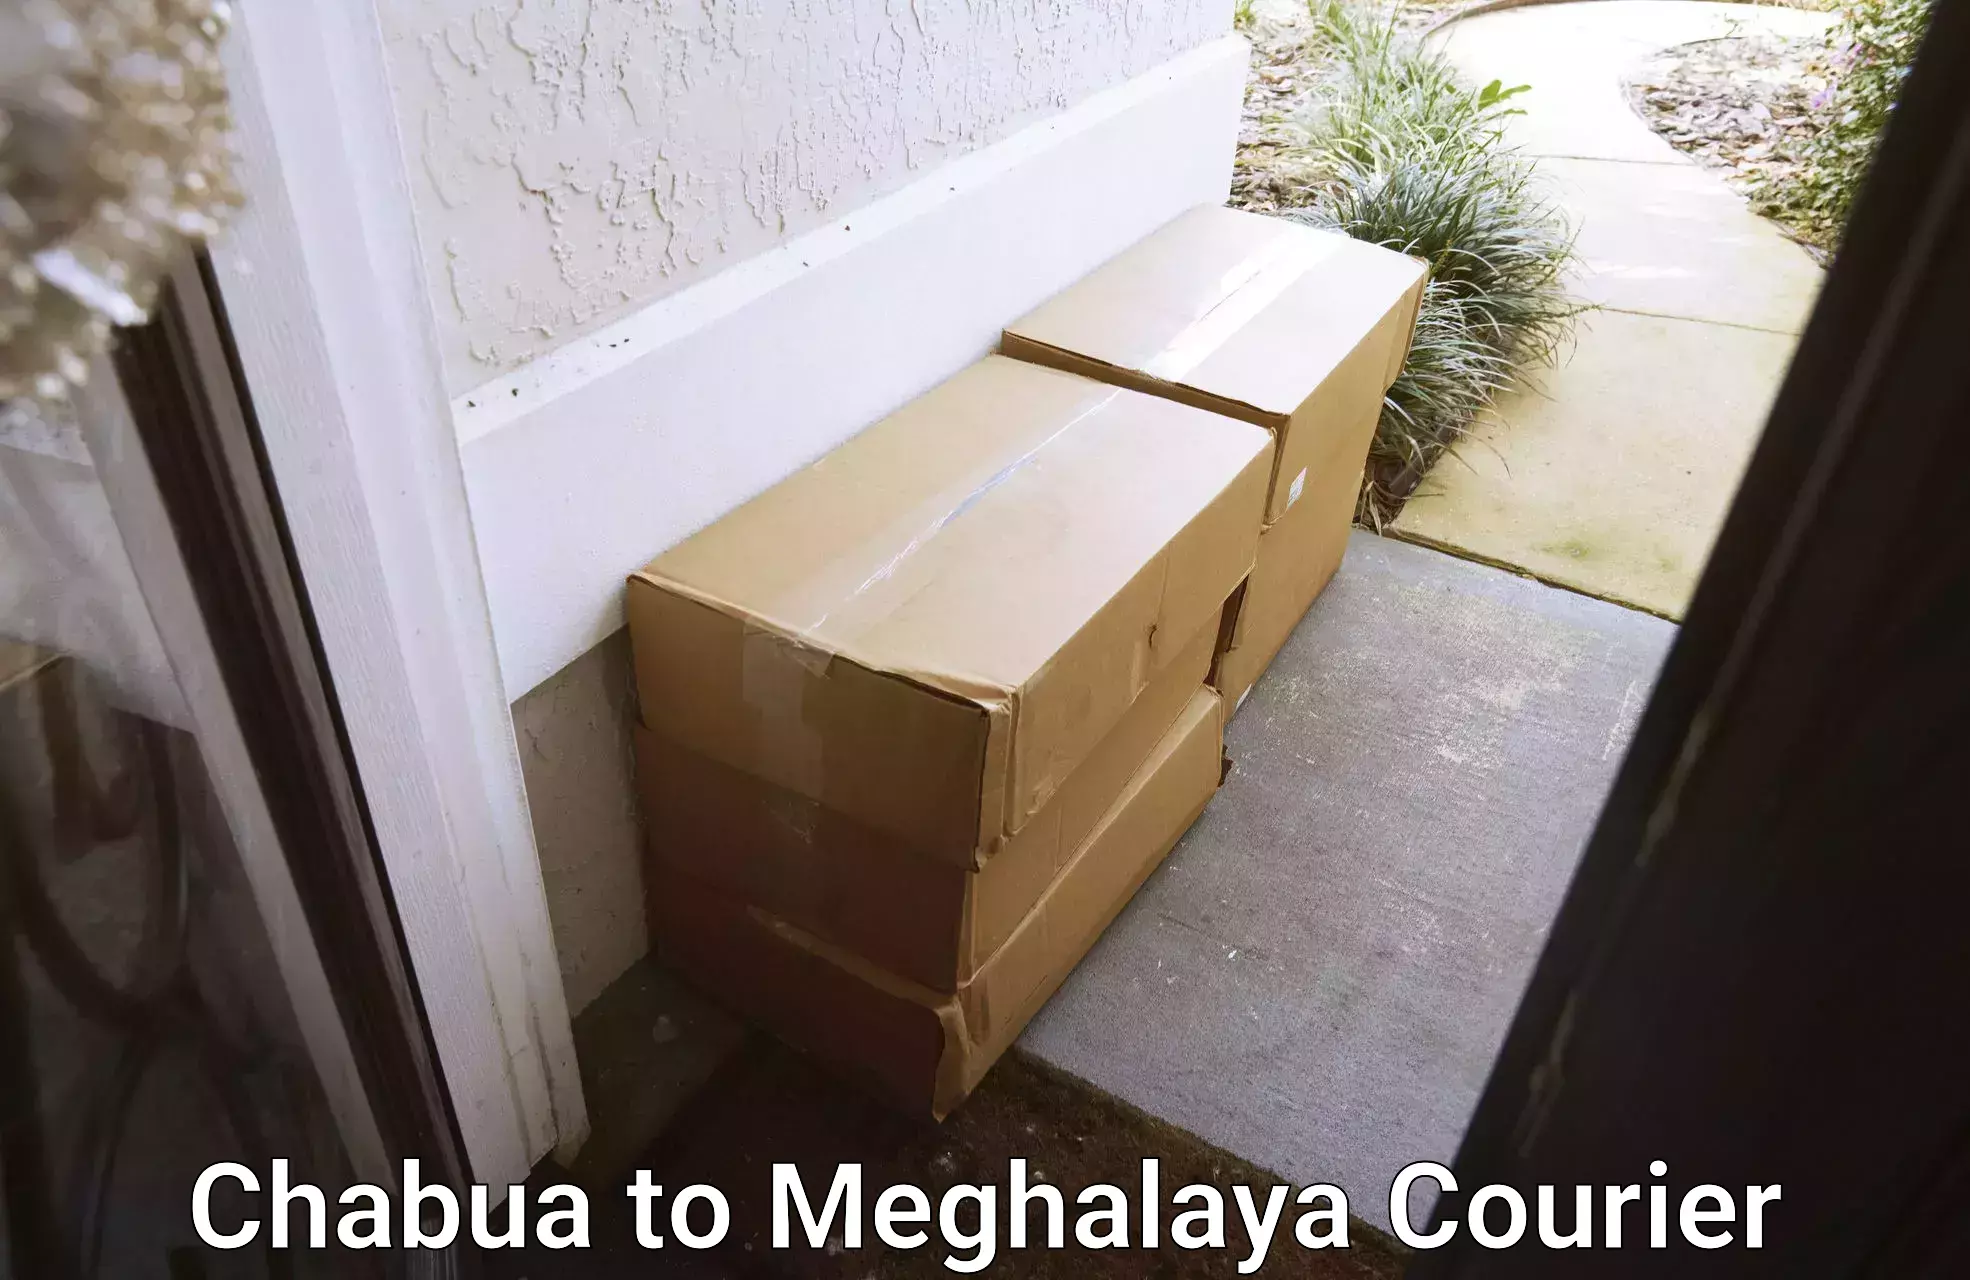 Courier service comparison Chabua to Williamnagar